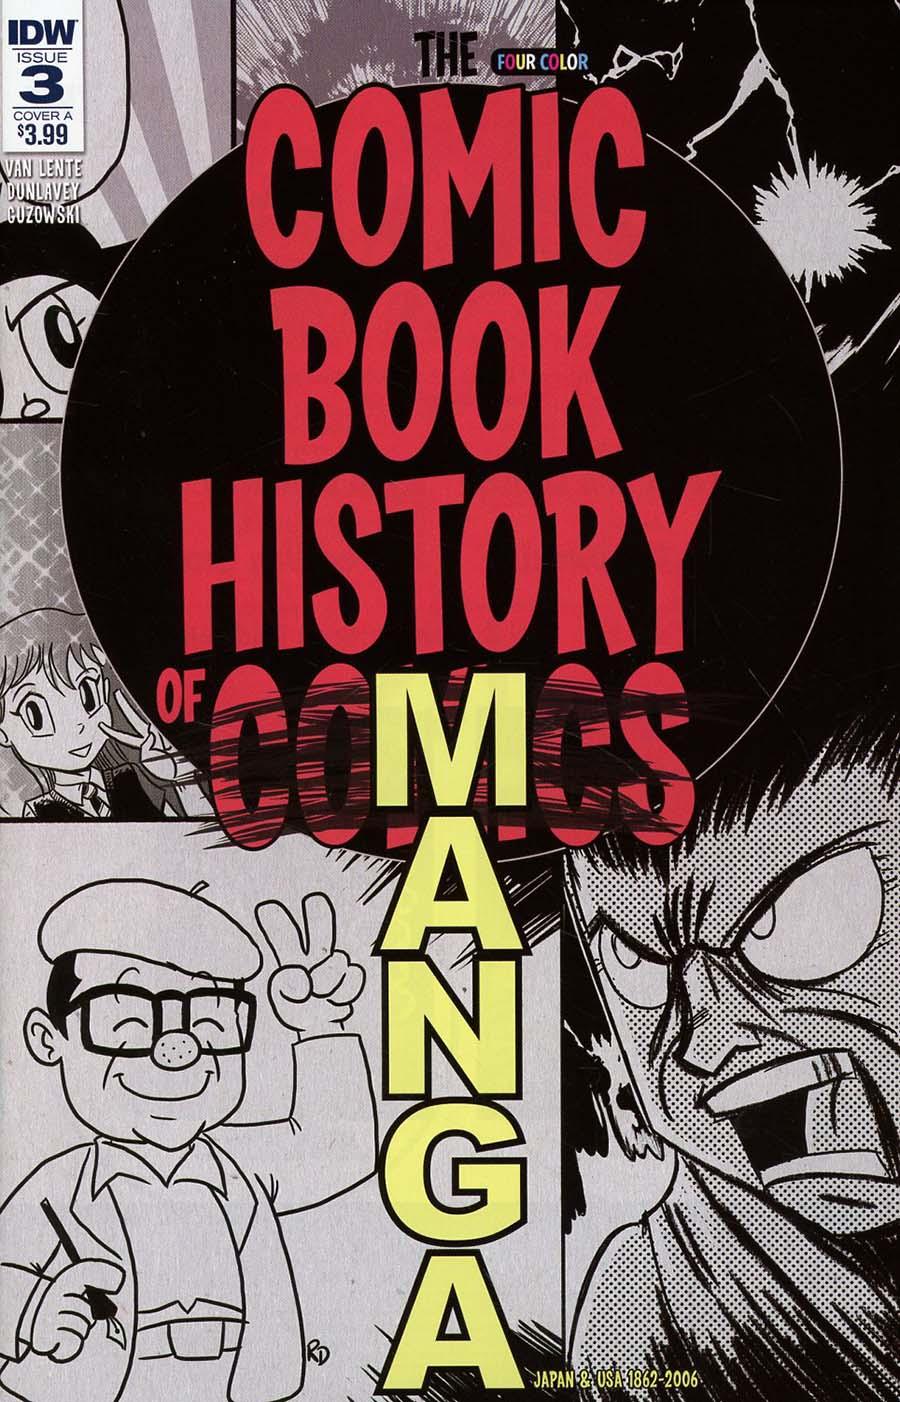 Comic Book History Of Comics Comics For All Vol. 1 #3